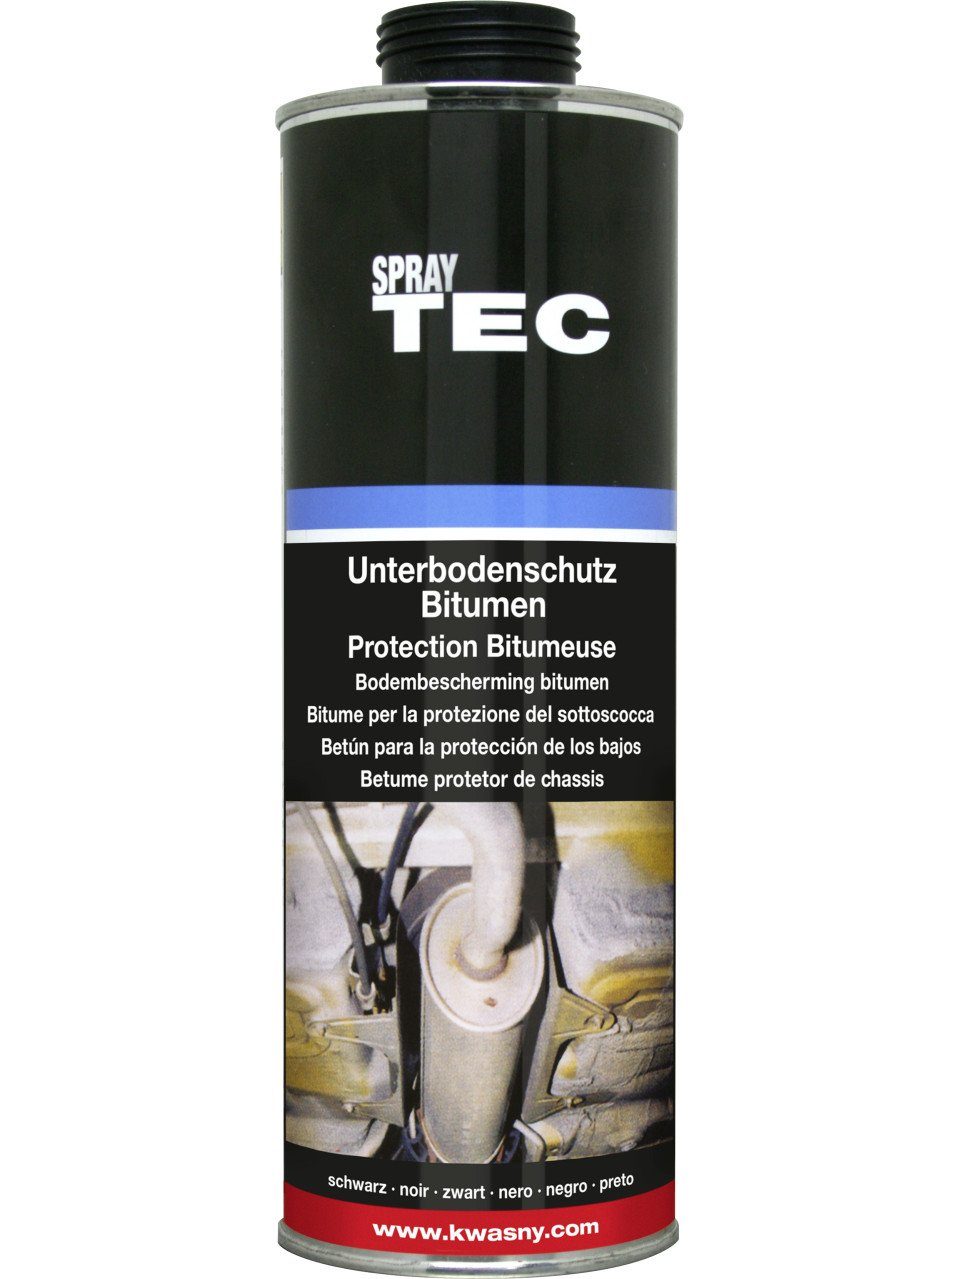 SprayTec SprayTEC Unterbodenschutz Bitumen schwarz 1L